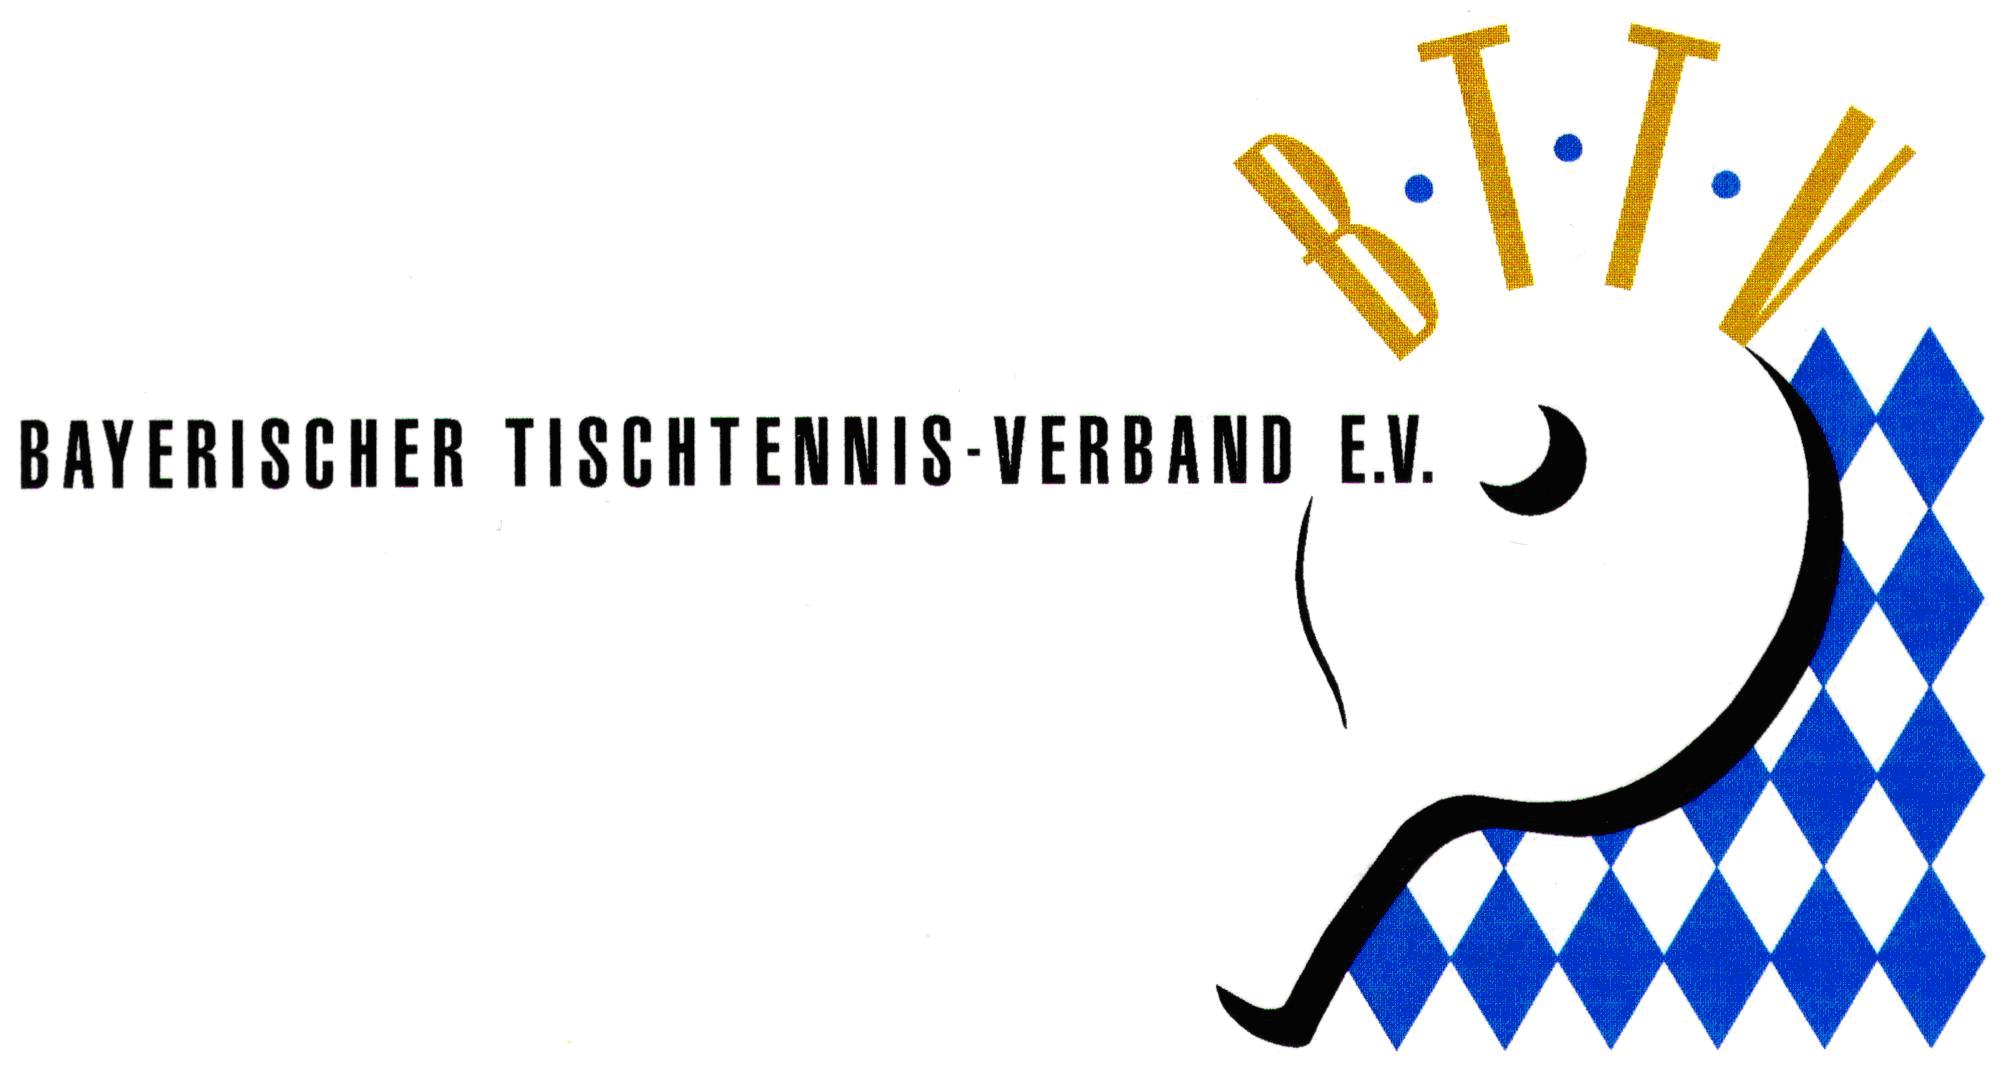 Bayerischer Tischtennis-Verband e. V.